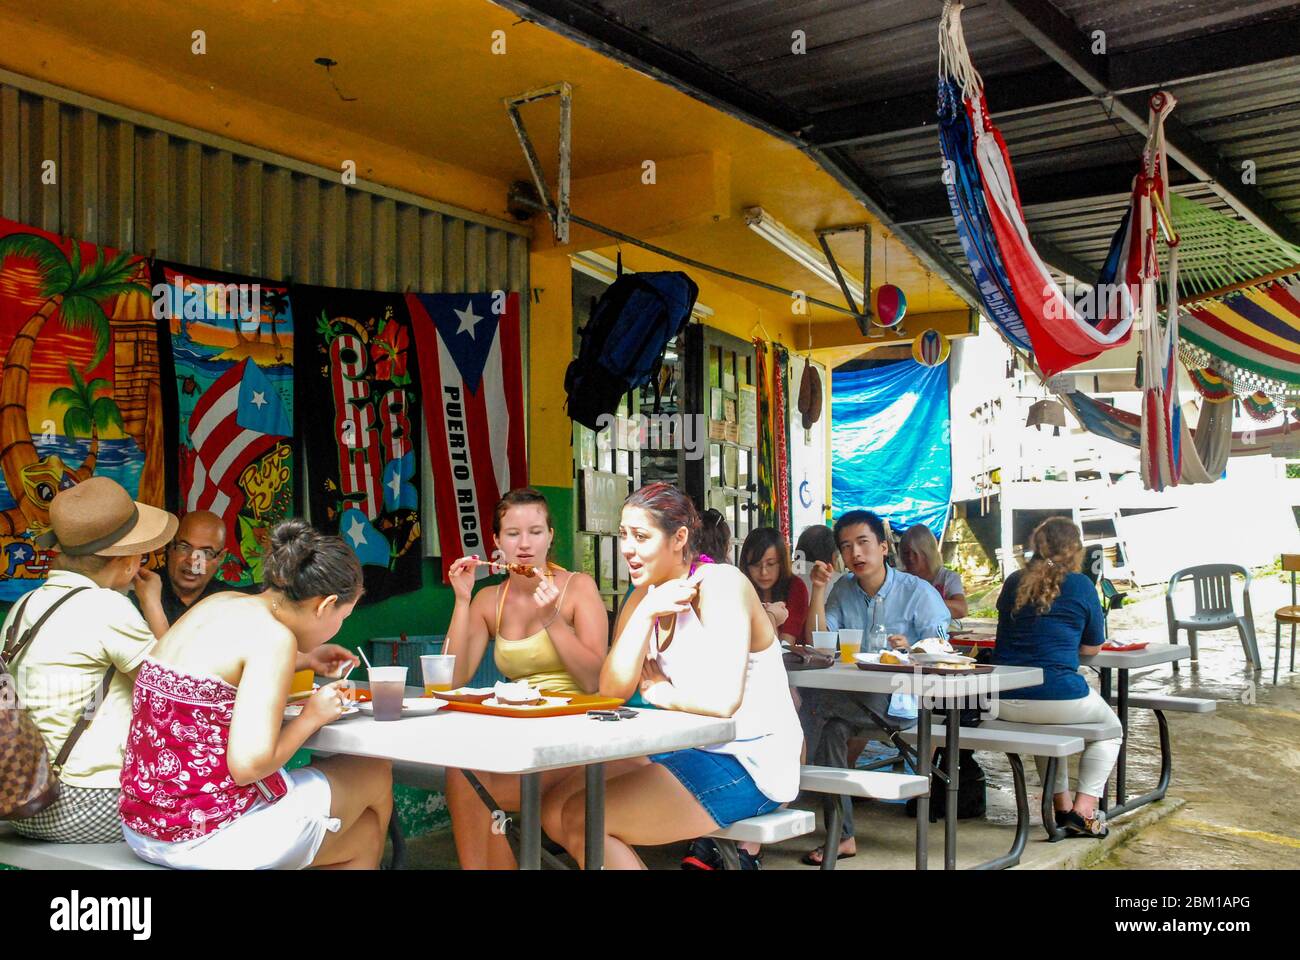 Turisti che visitano un ristorante o una caffetteria sulla strada per mangiare e bere nella Foresta Nazionale di El Yunque, un'area tropicale della foresta pluviale a Puerto Rico Foto Stock